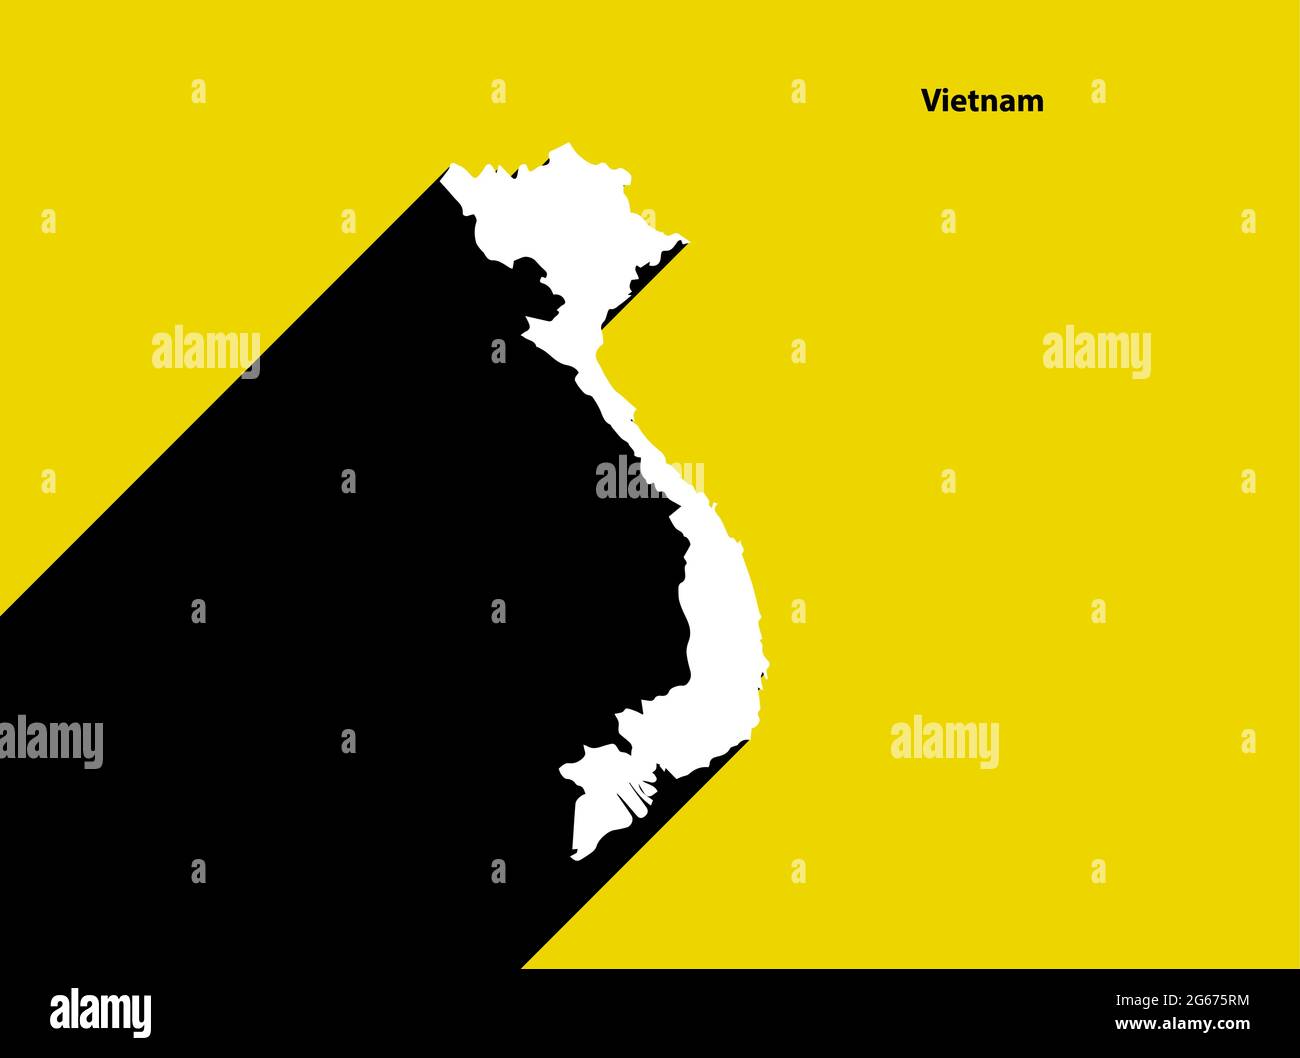 Vietnam carte sur affiche rétro avec ombre longue.Signe vintage facile à éditer, manipuler, redimensionner ou coloriser. Illustration de Vecteur